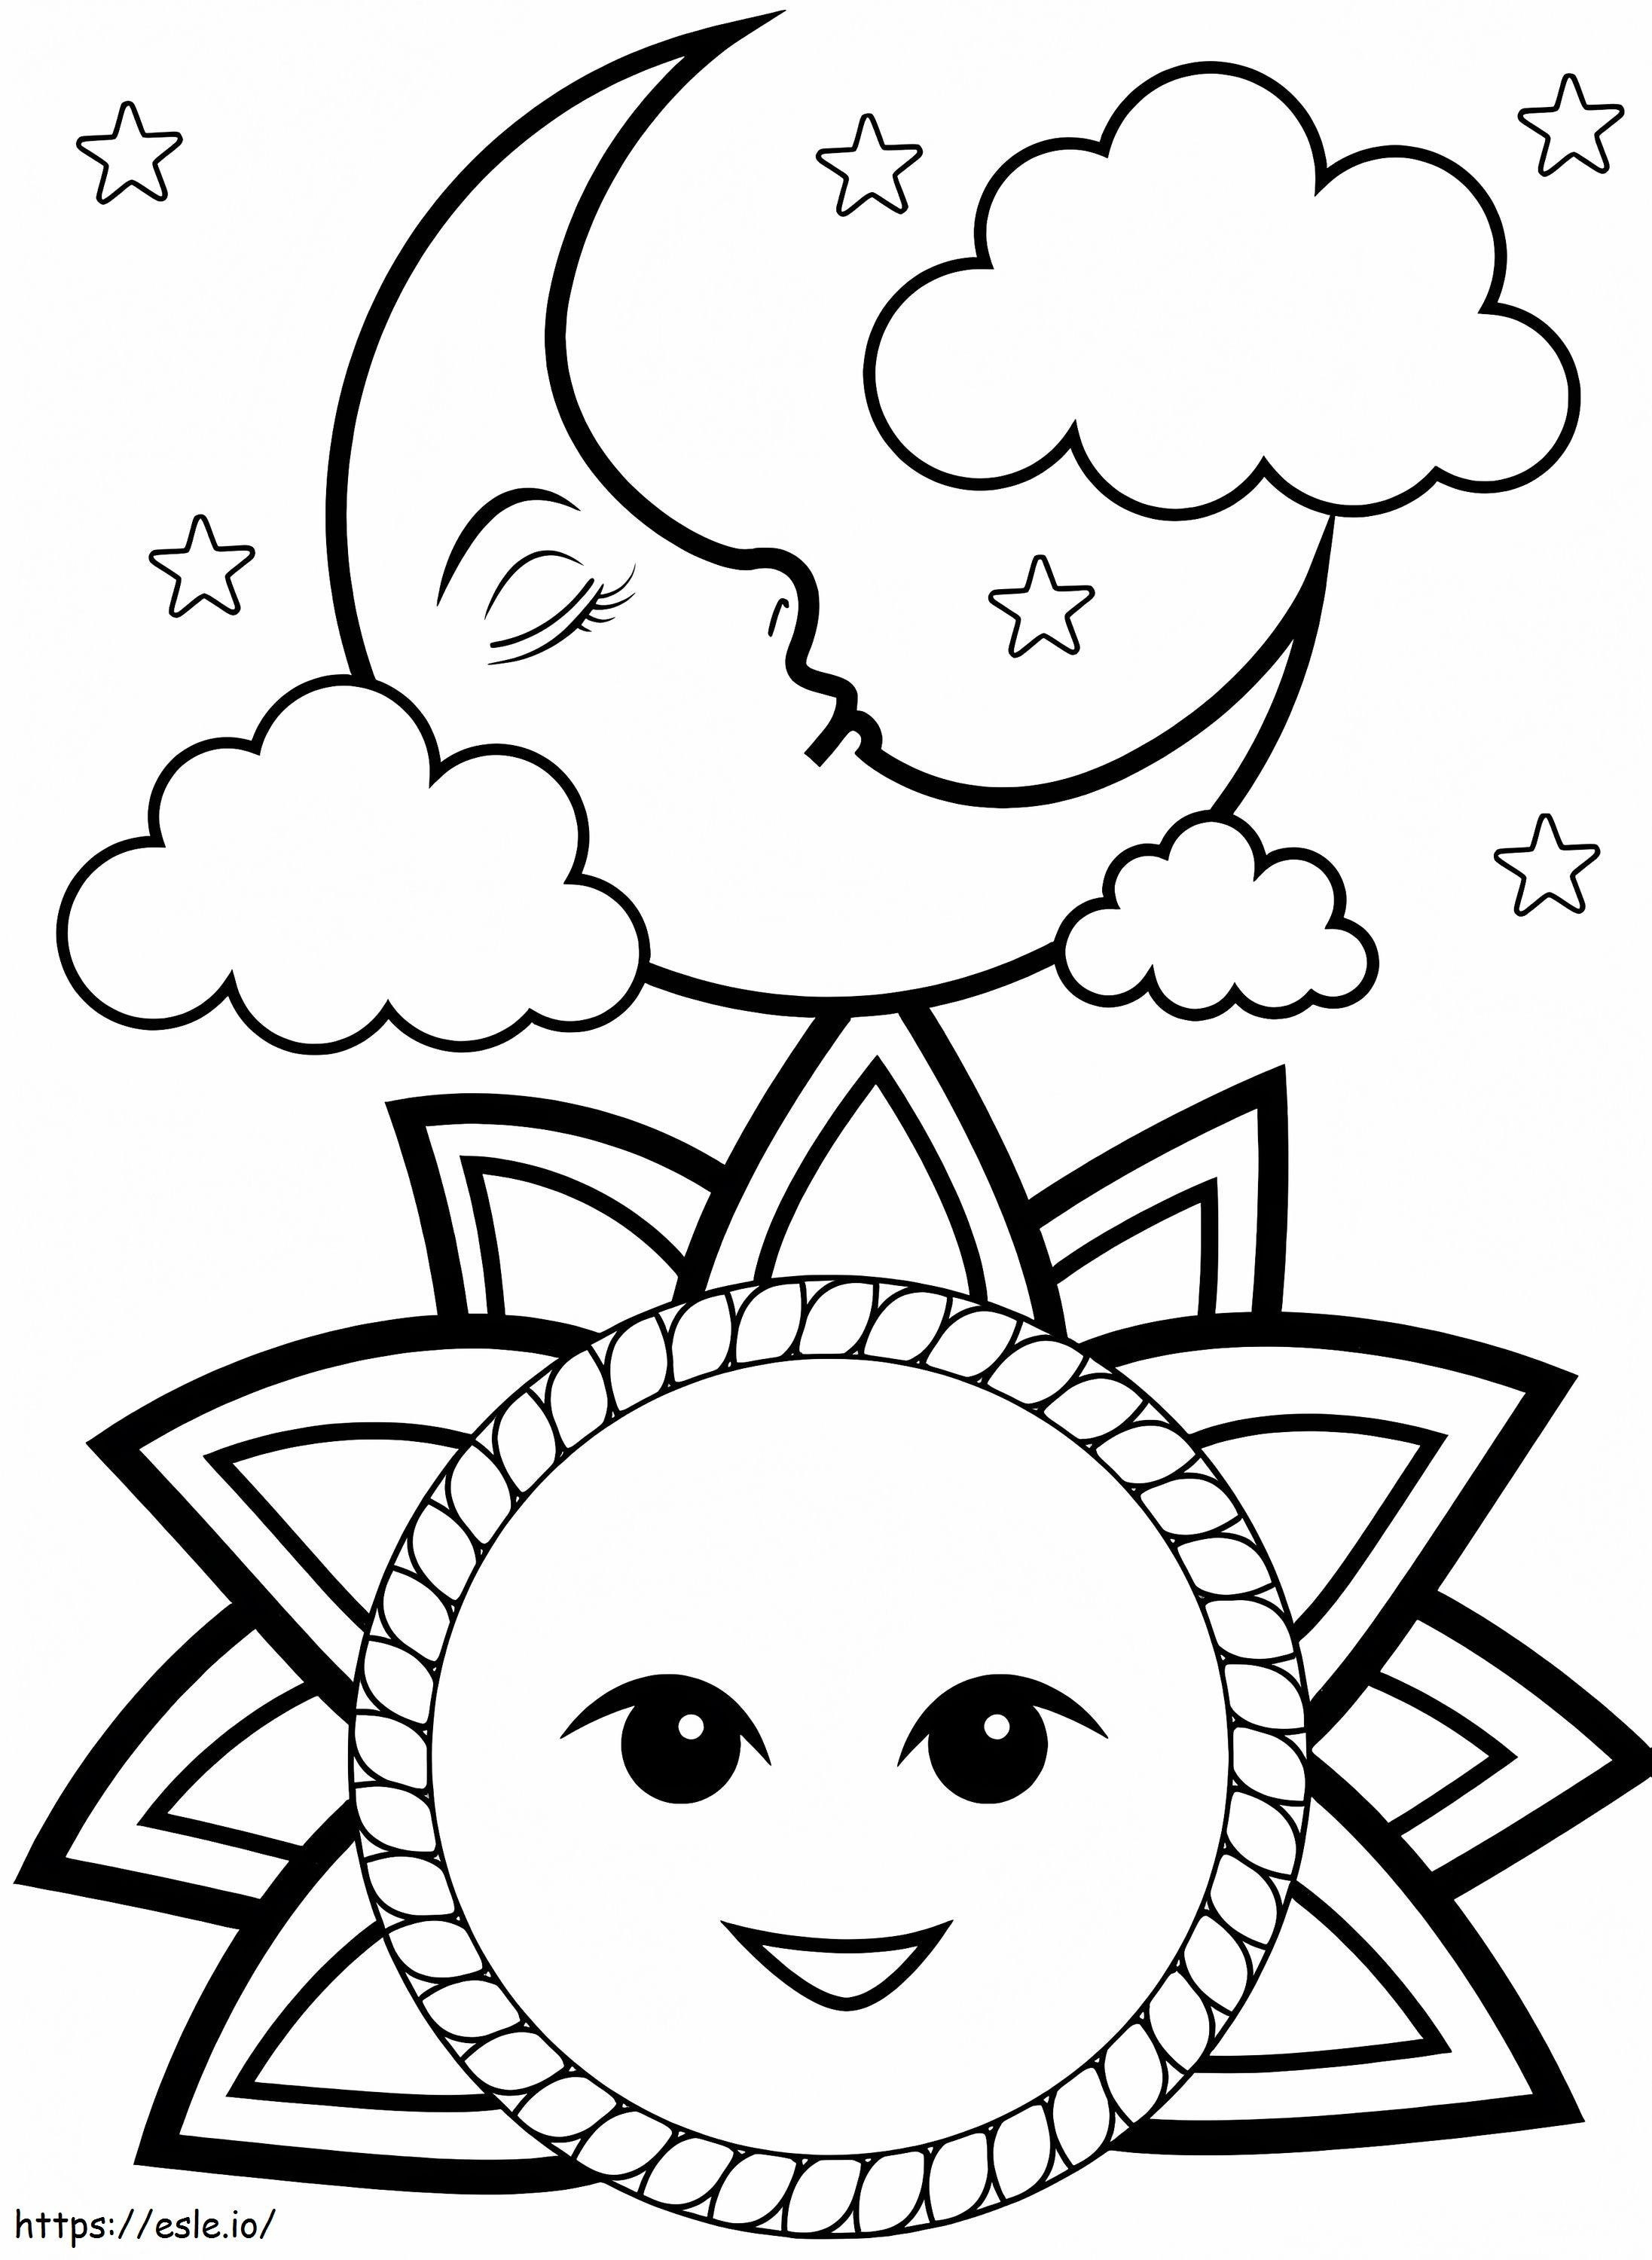 Coloriage Imprimer Soleil Et Lune à imprimer dessin